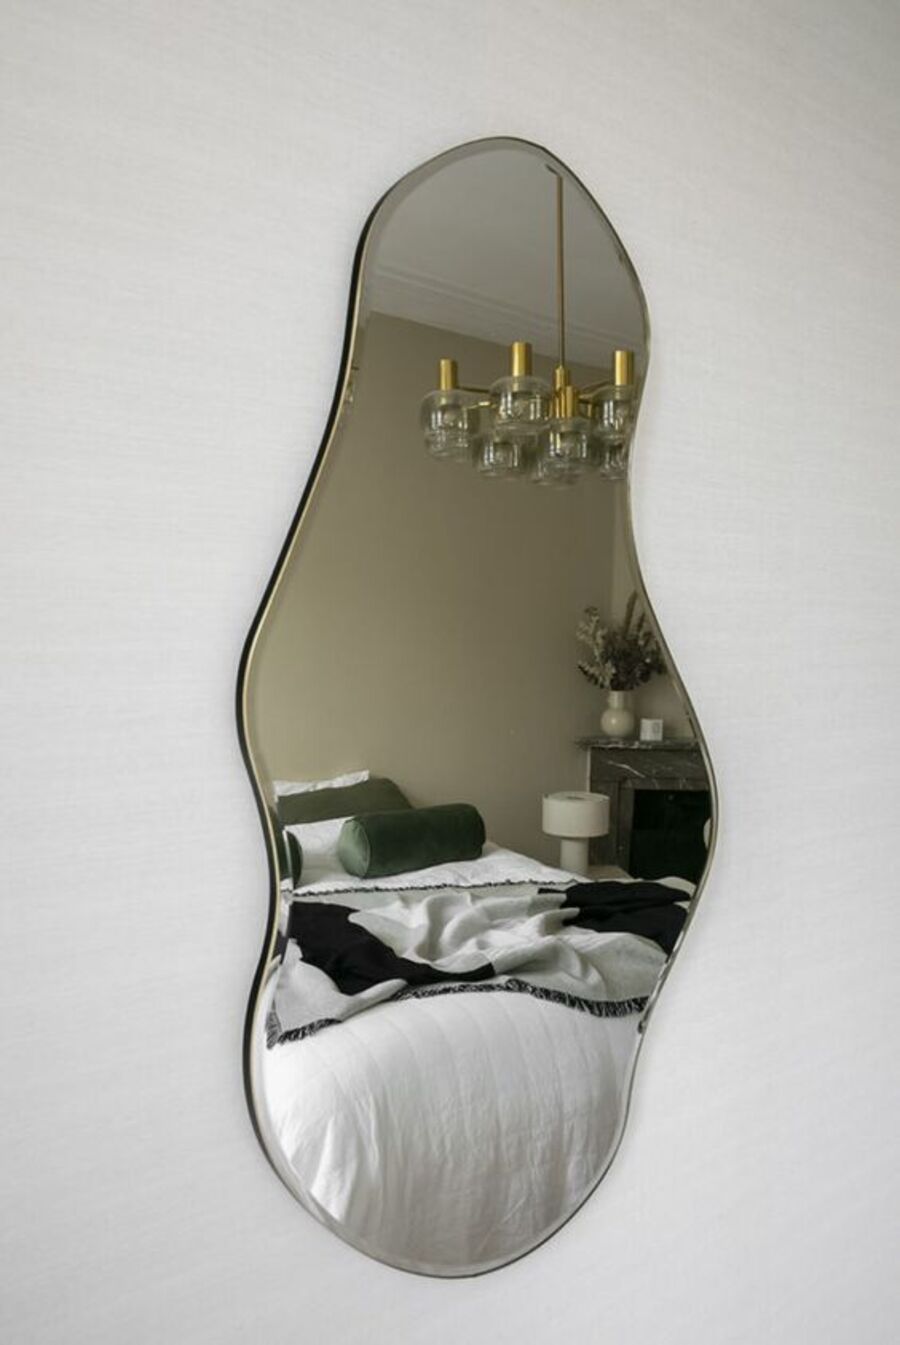 Pared blanca con un espejo con curvas que refleja una cama con cojines verdes y una lámpara colgante de estilo vintage.